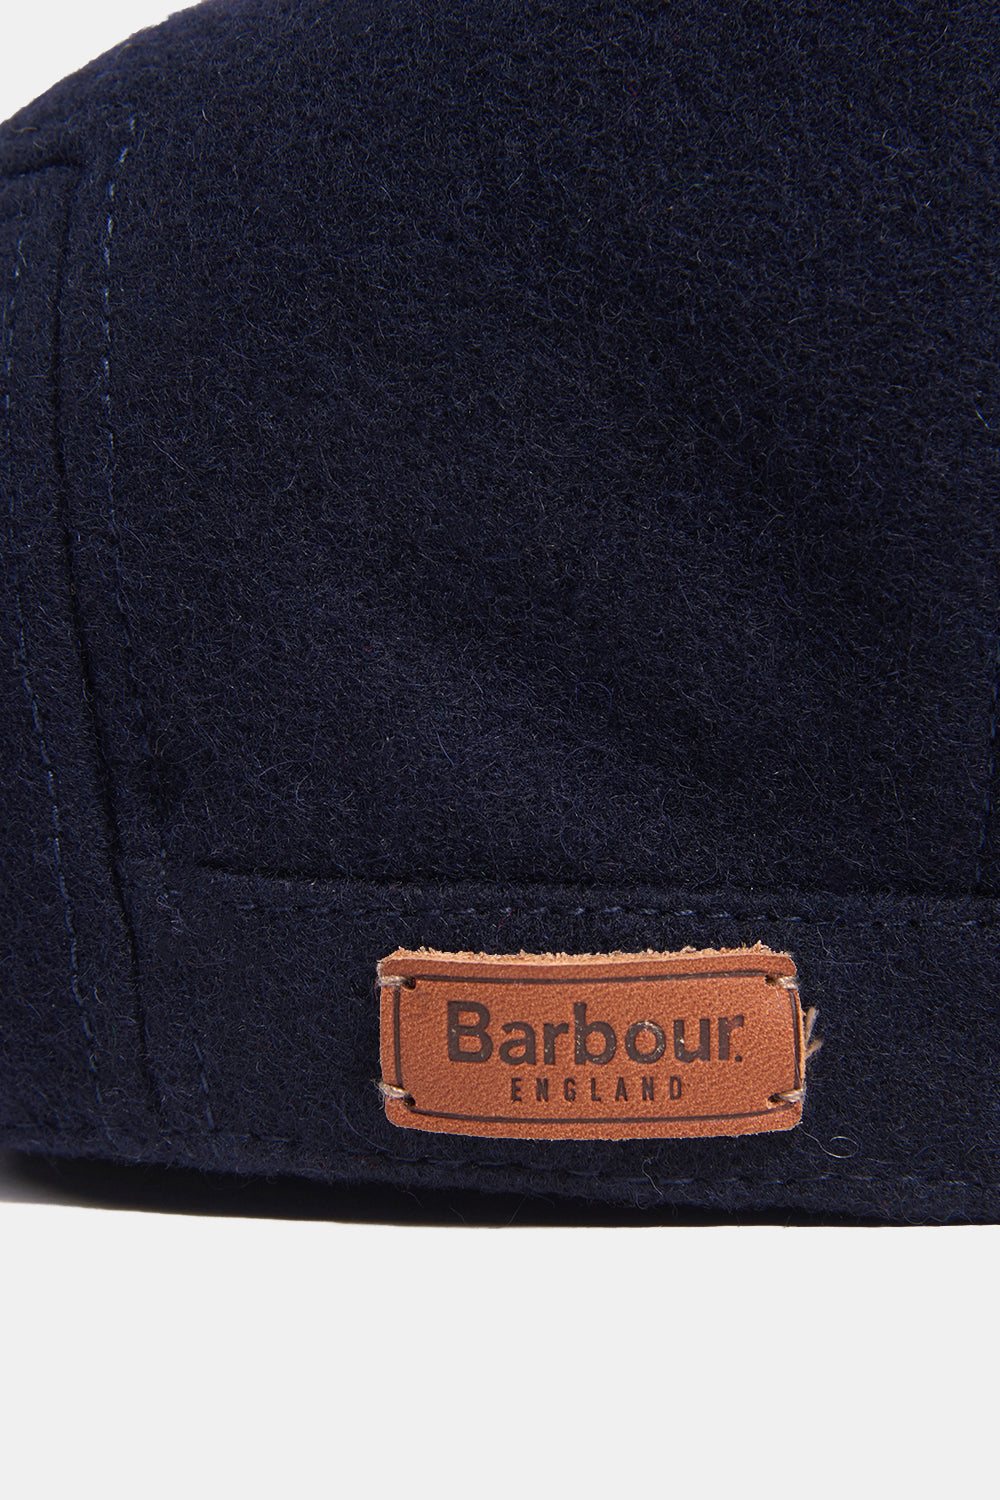 Barbour Redshore Flat Cap (Navy) | Number Six